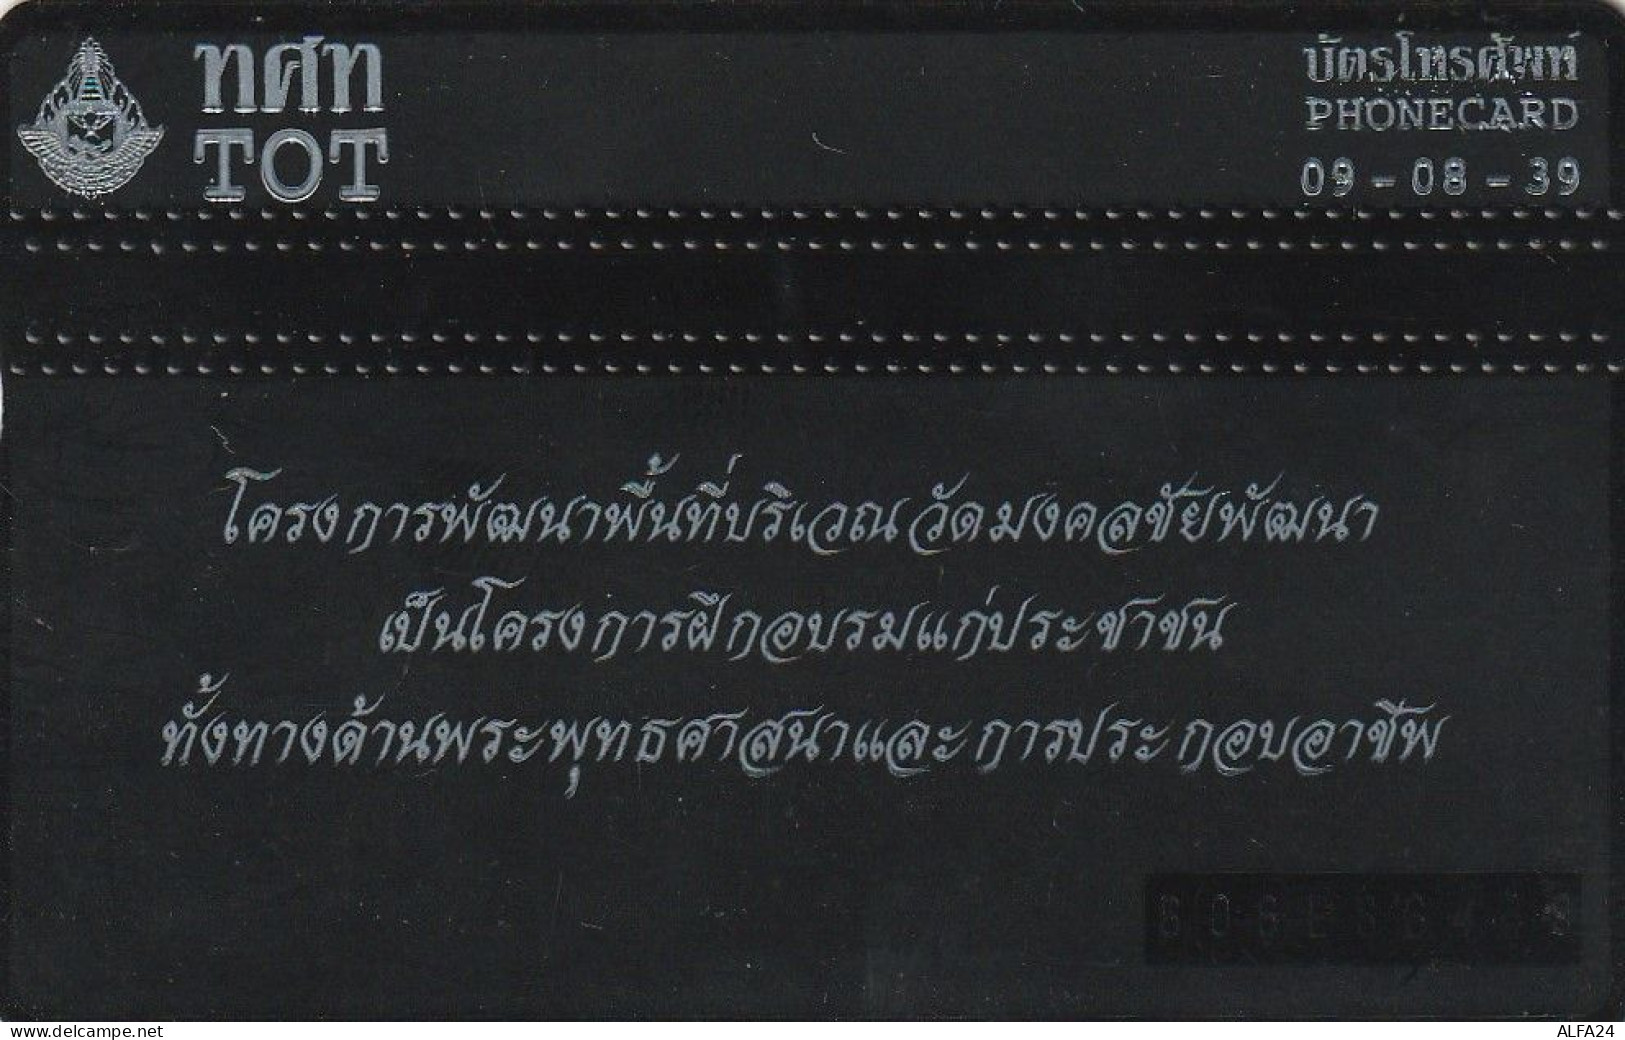 PHONE CARD THAILANDIA  (CZ1218 - Thailand